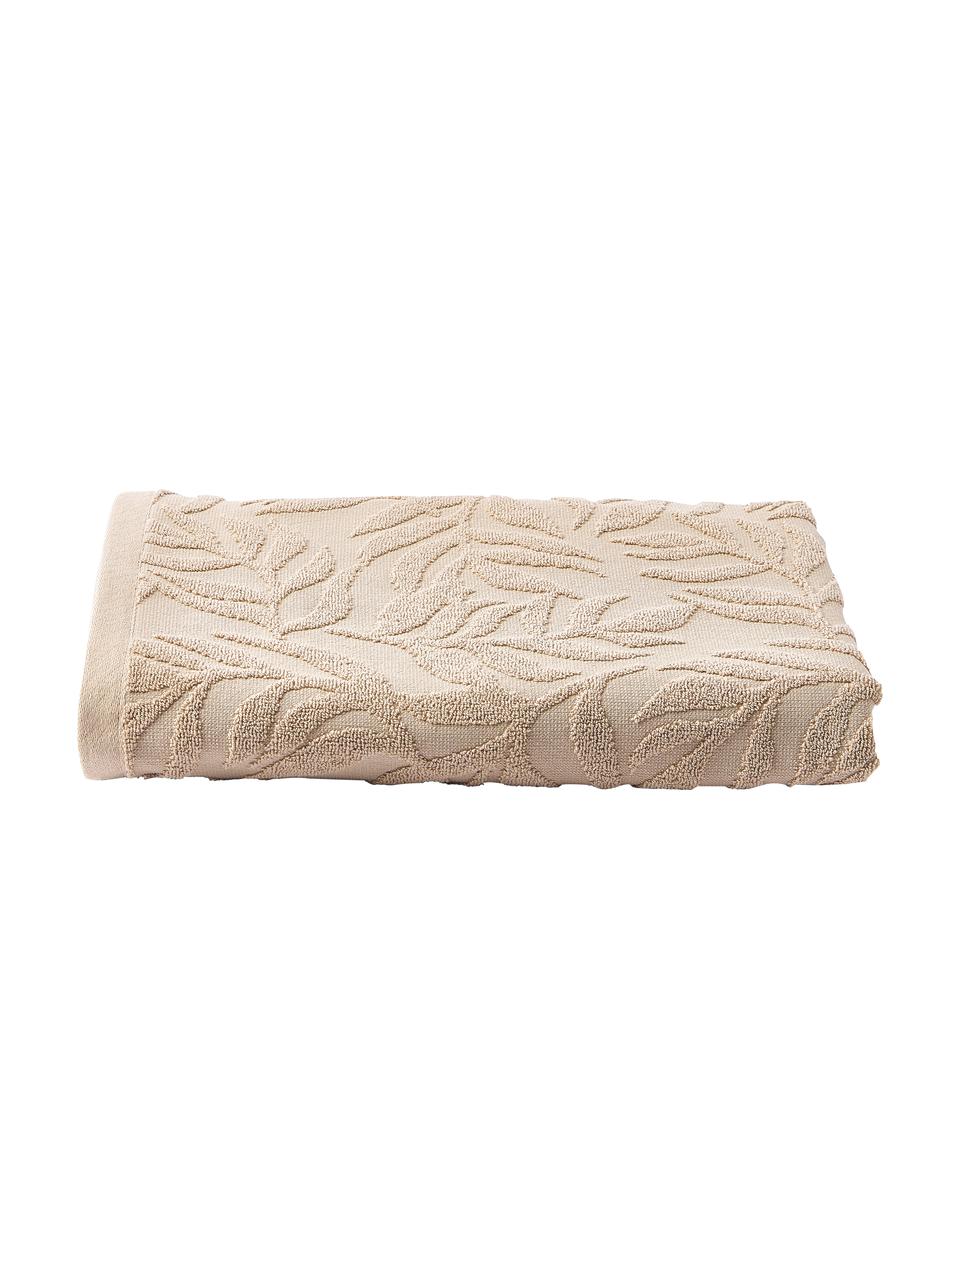 Ręcznik z bawełny Leaf, Beżowy, S 70 x D 140 cm